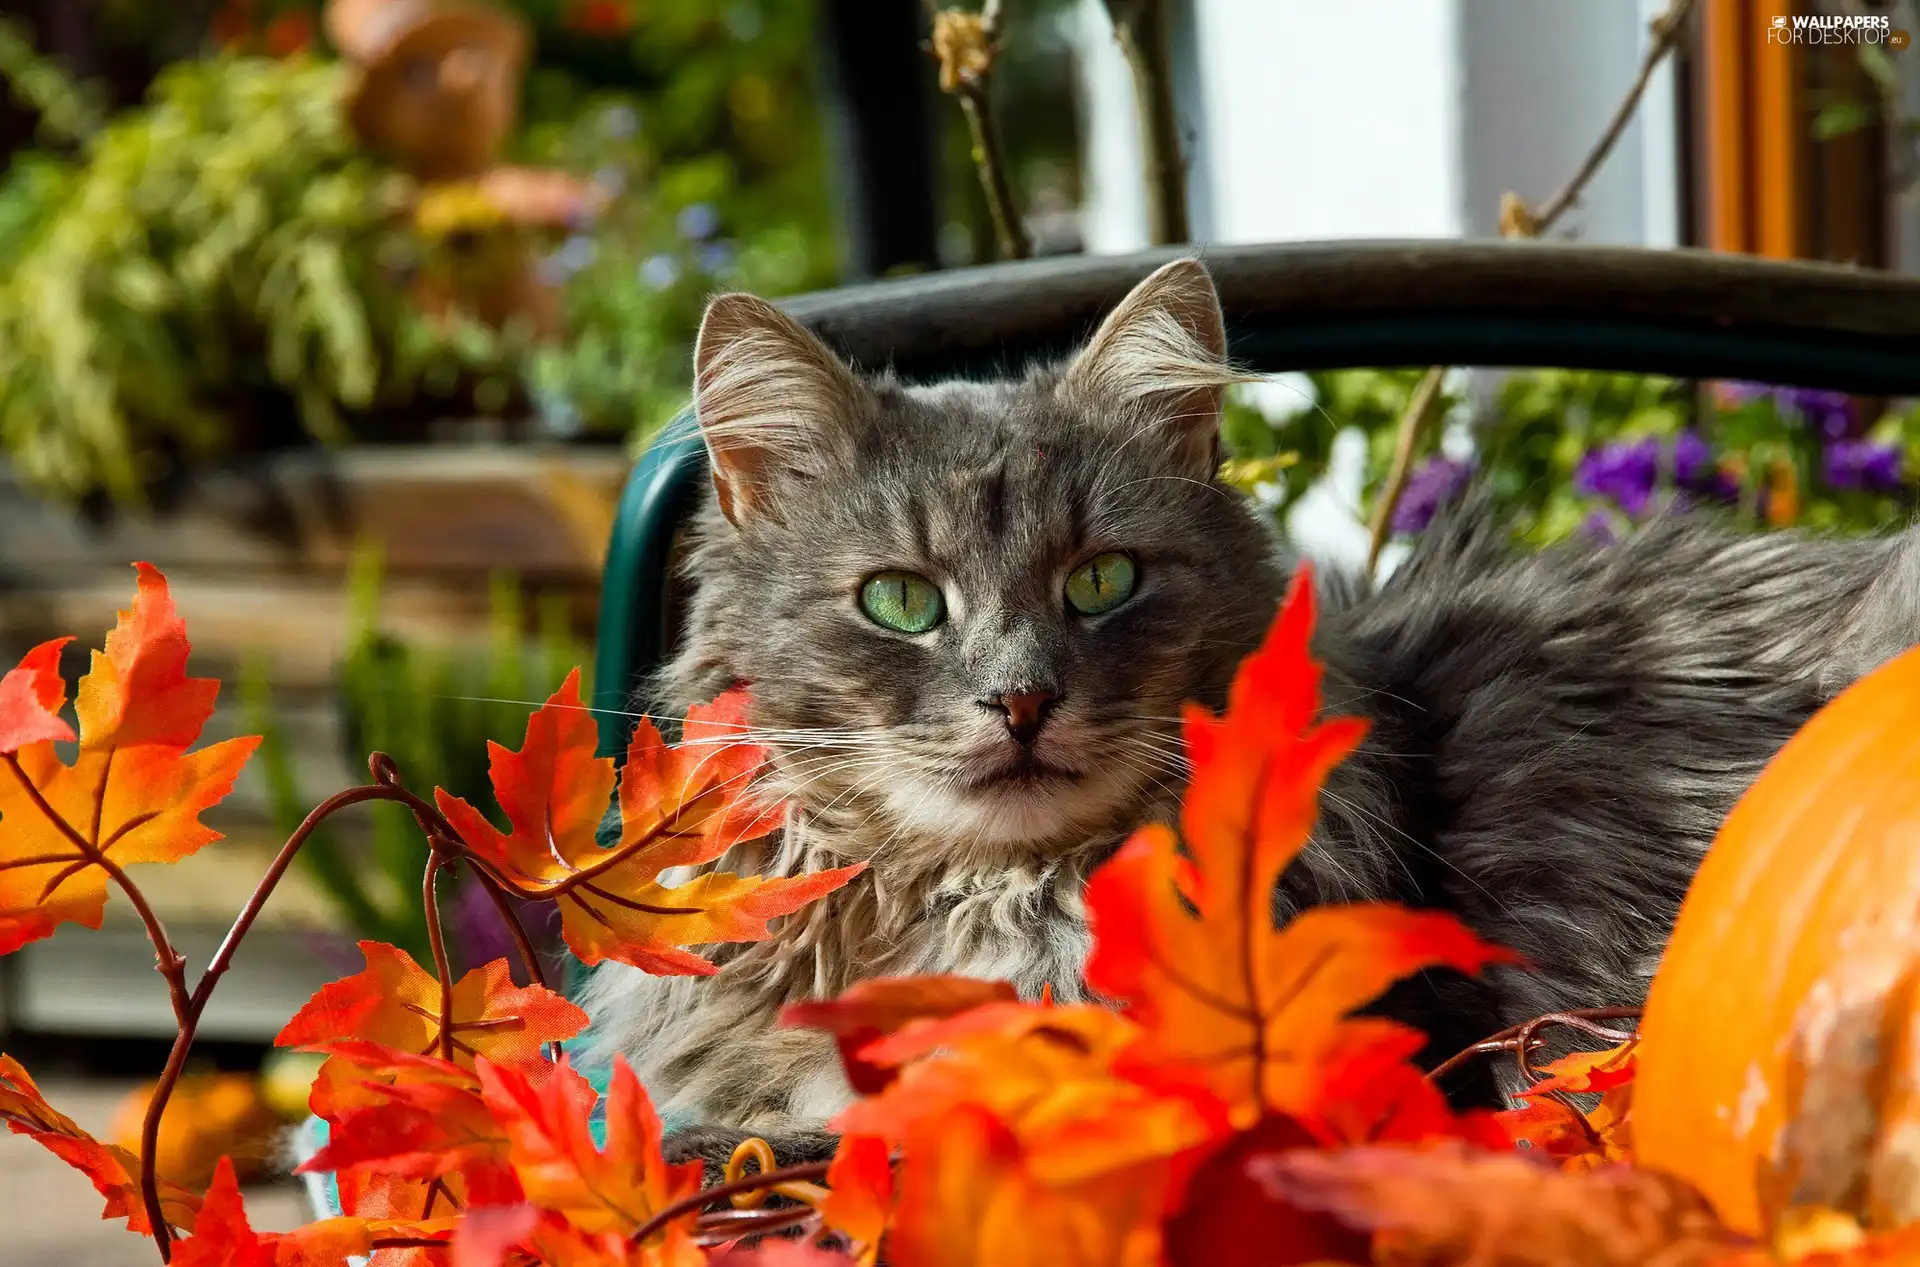 Leaf, cat, Autumn